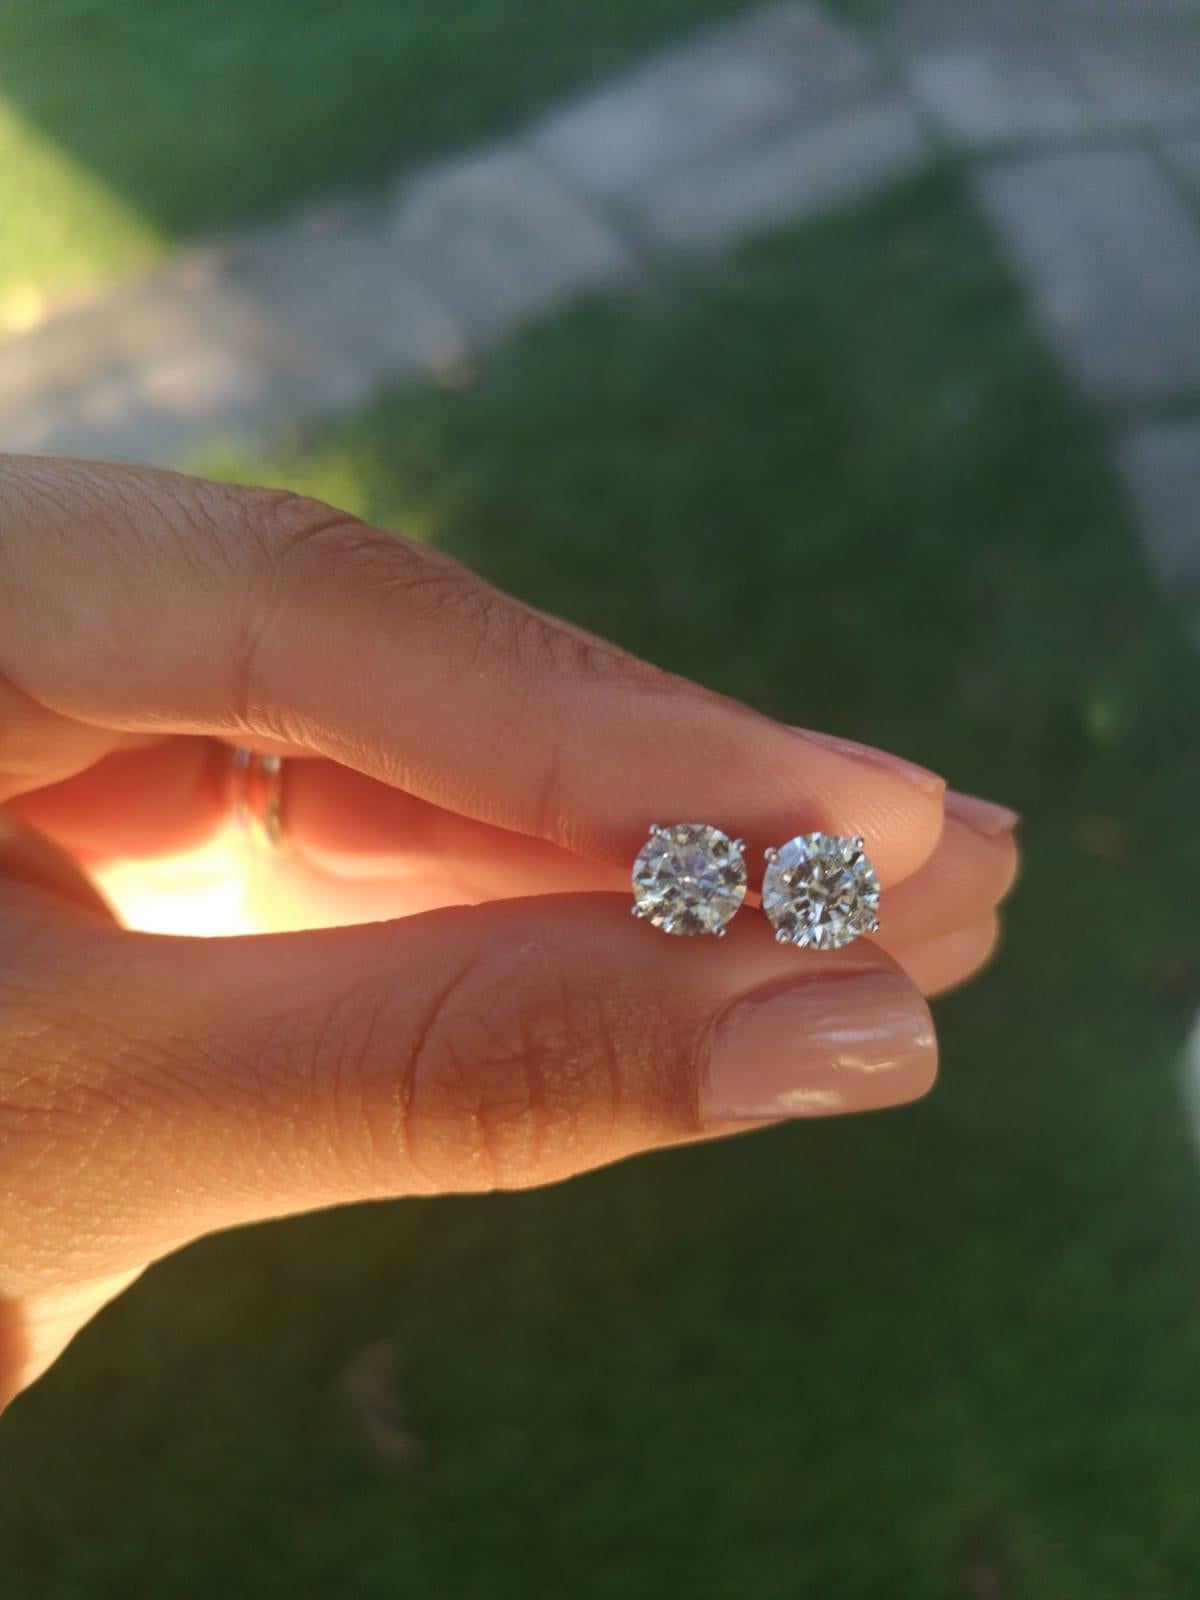 diamond earrings sale